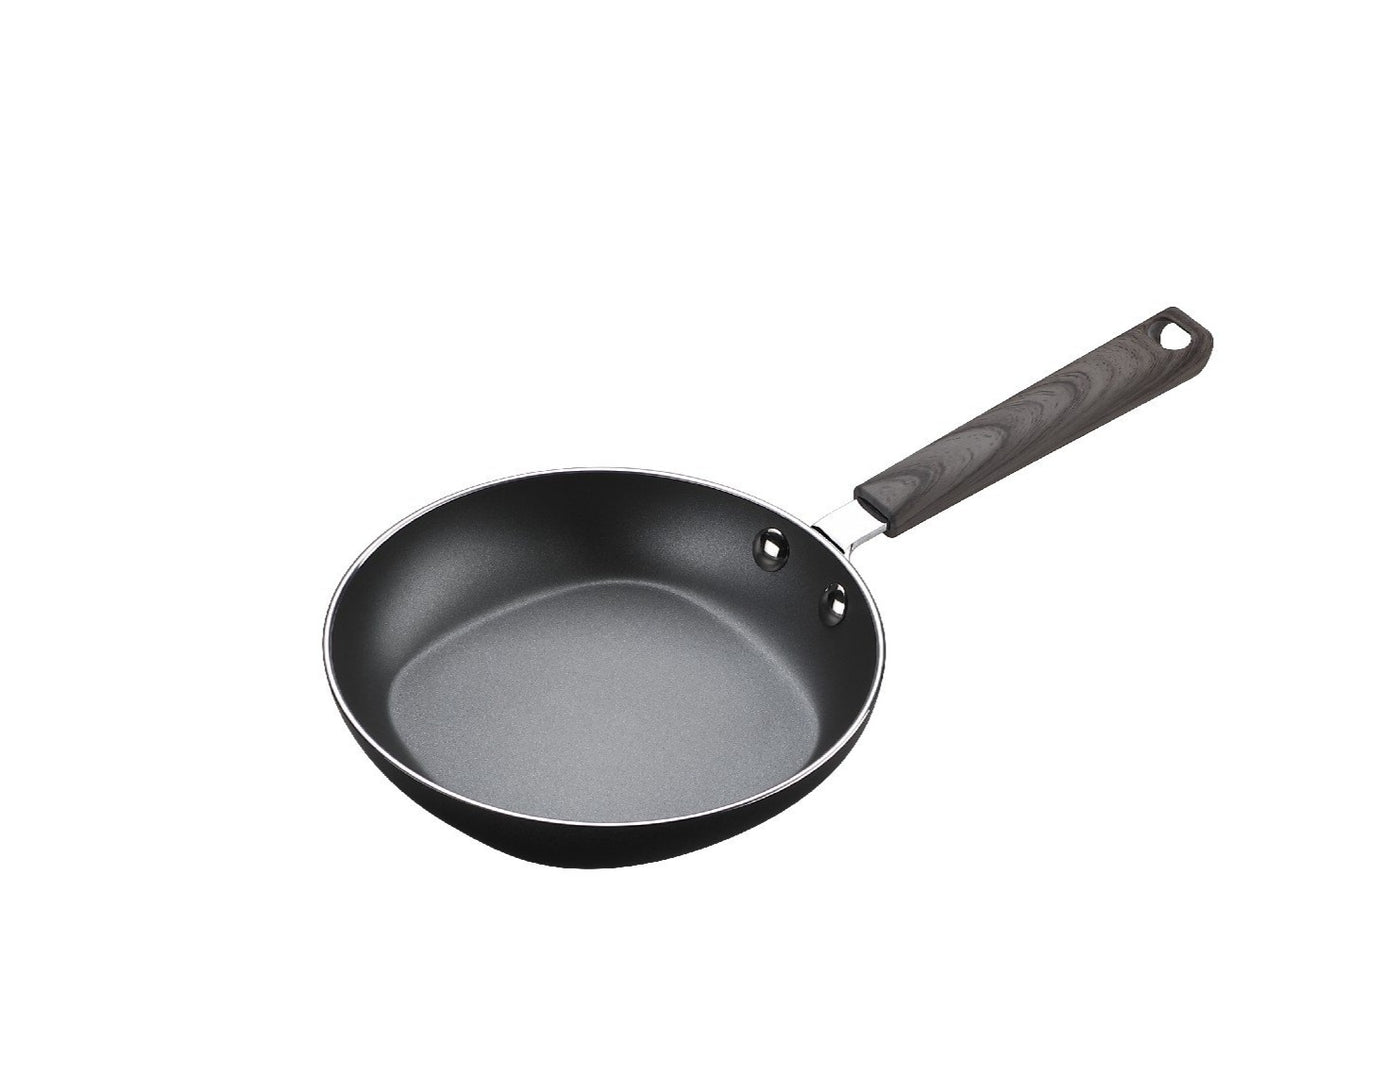 8-Inch Frying Pan